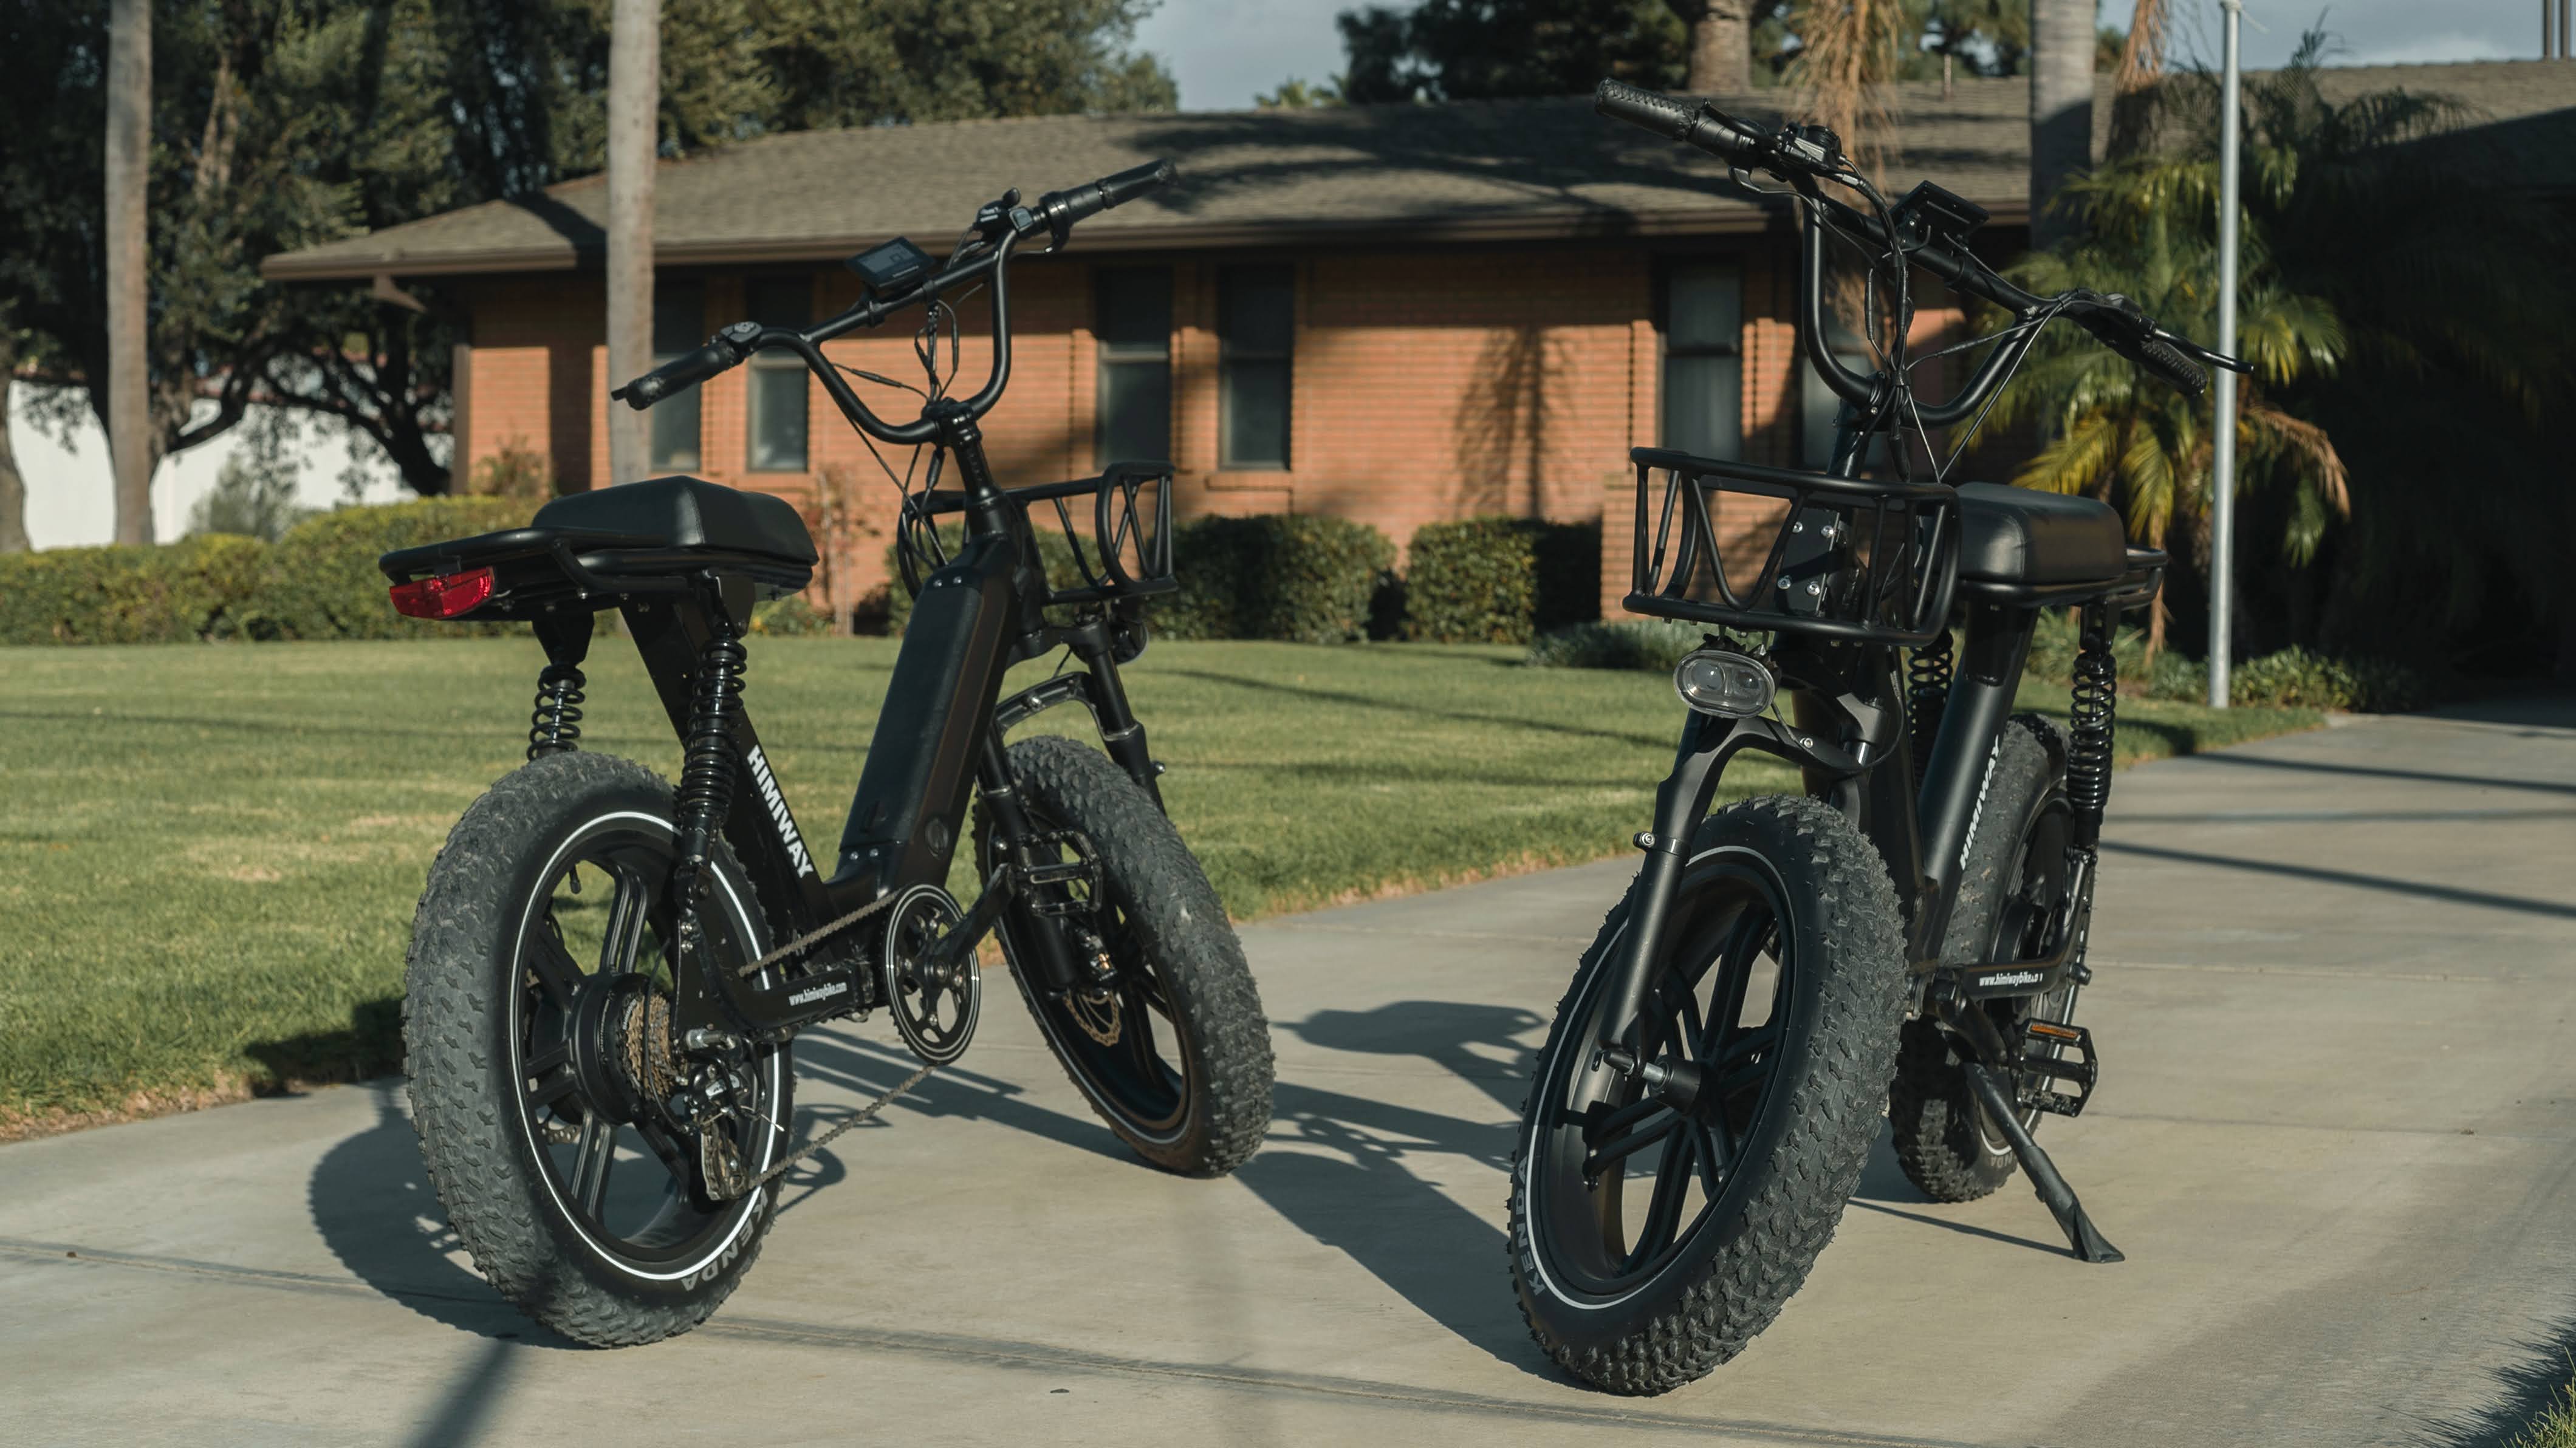 Fahrradträger mit besten Testergebnissen, auch für E-Bikes – Westfalia -Automotive